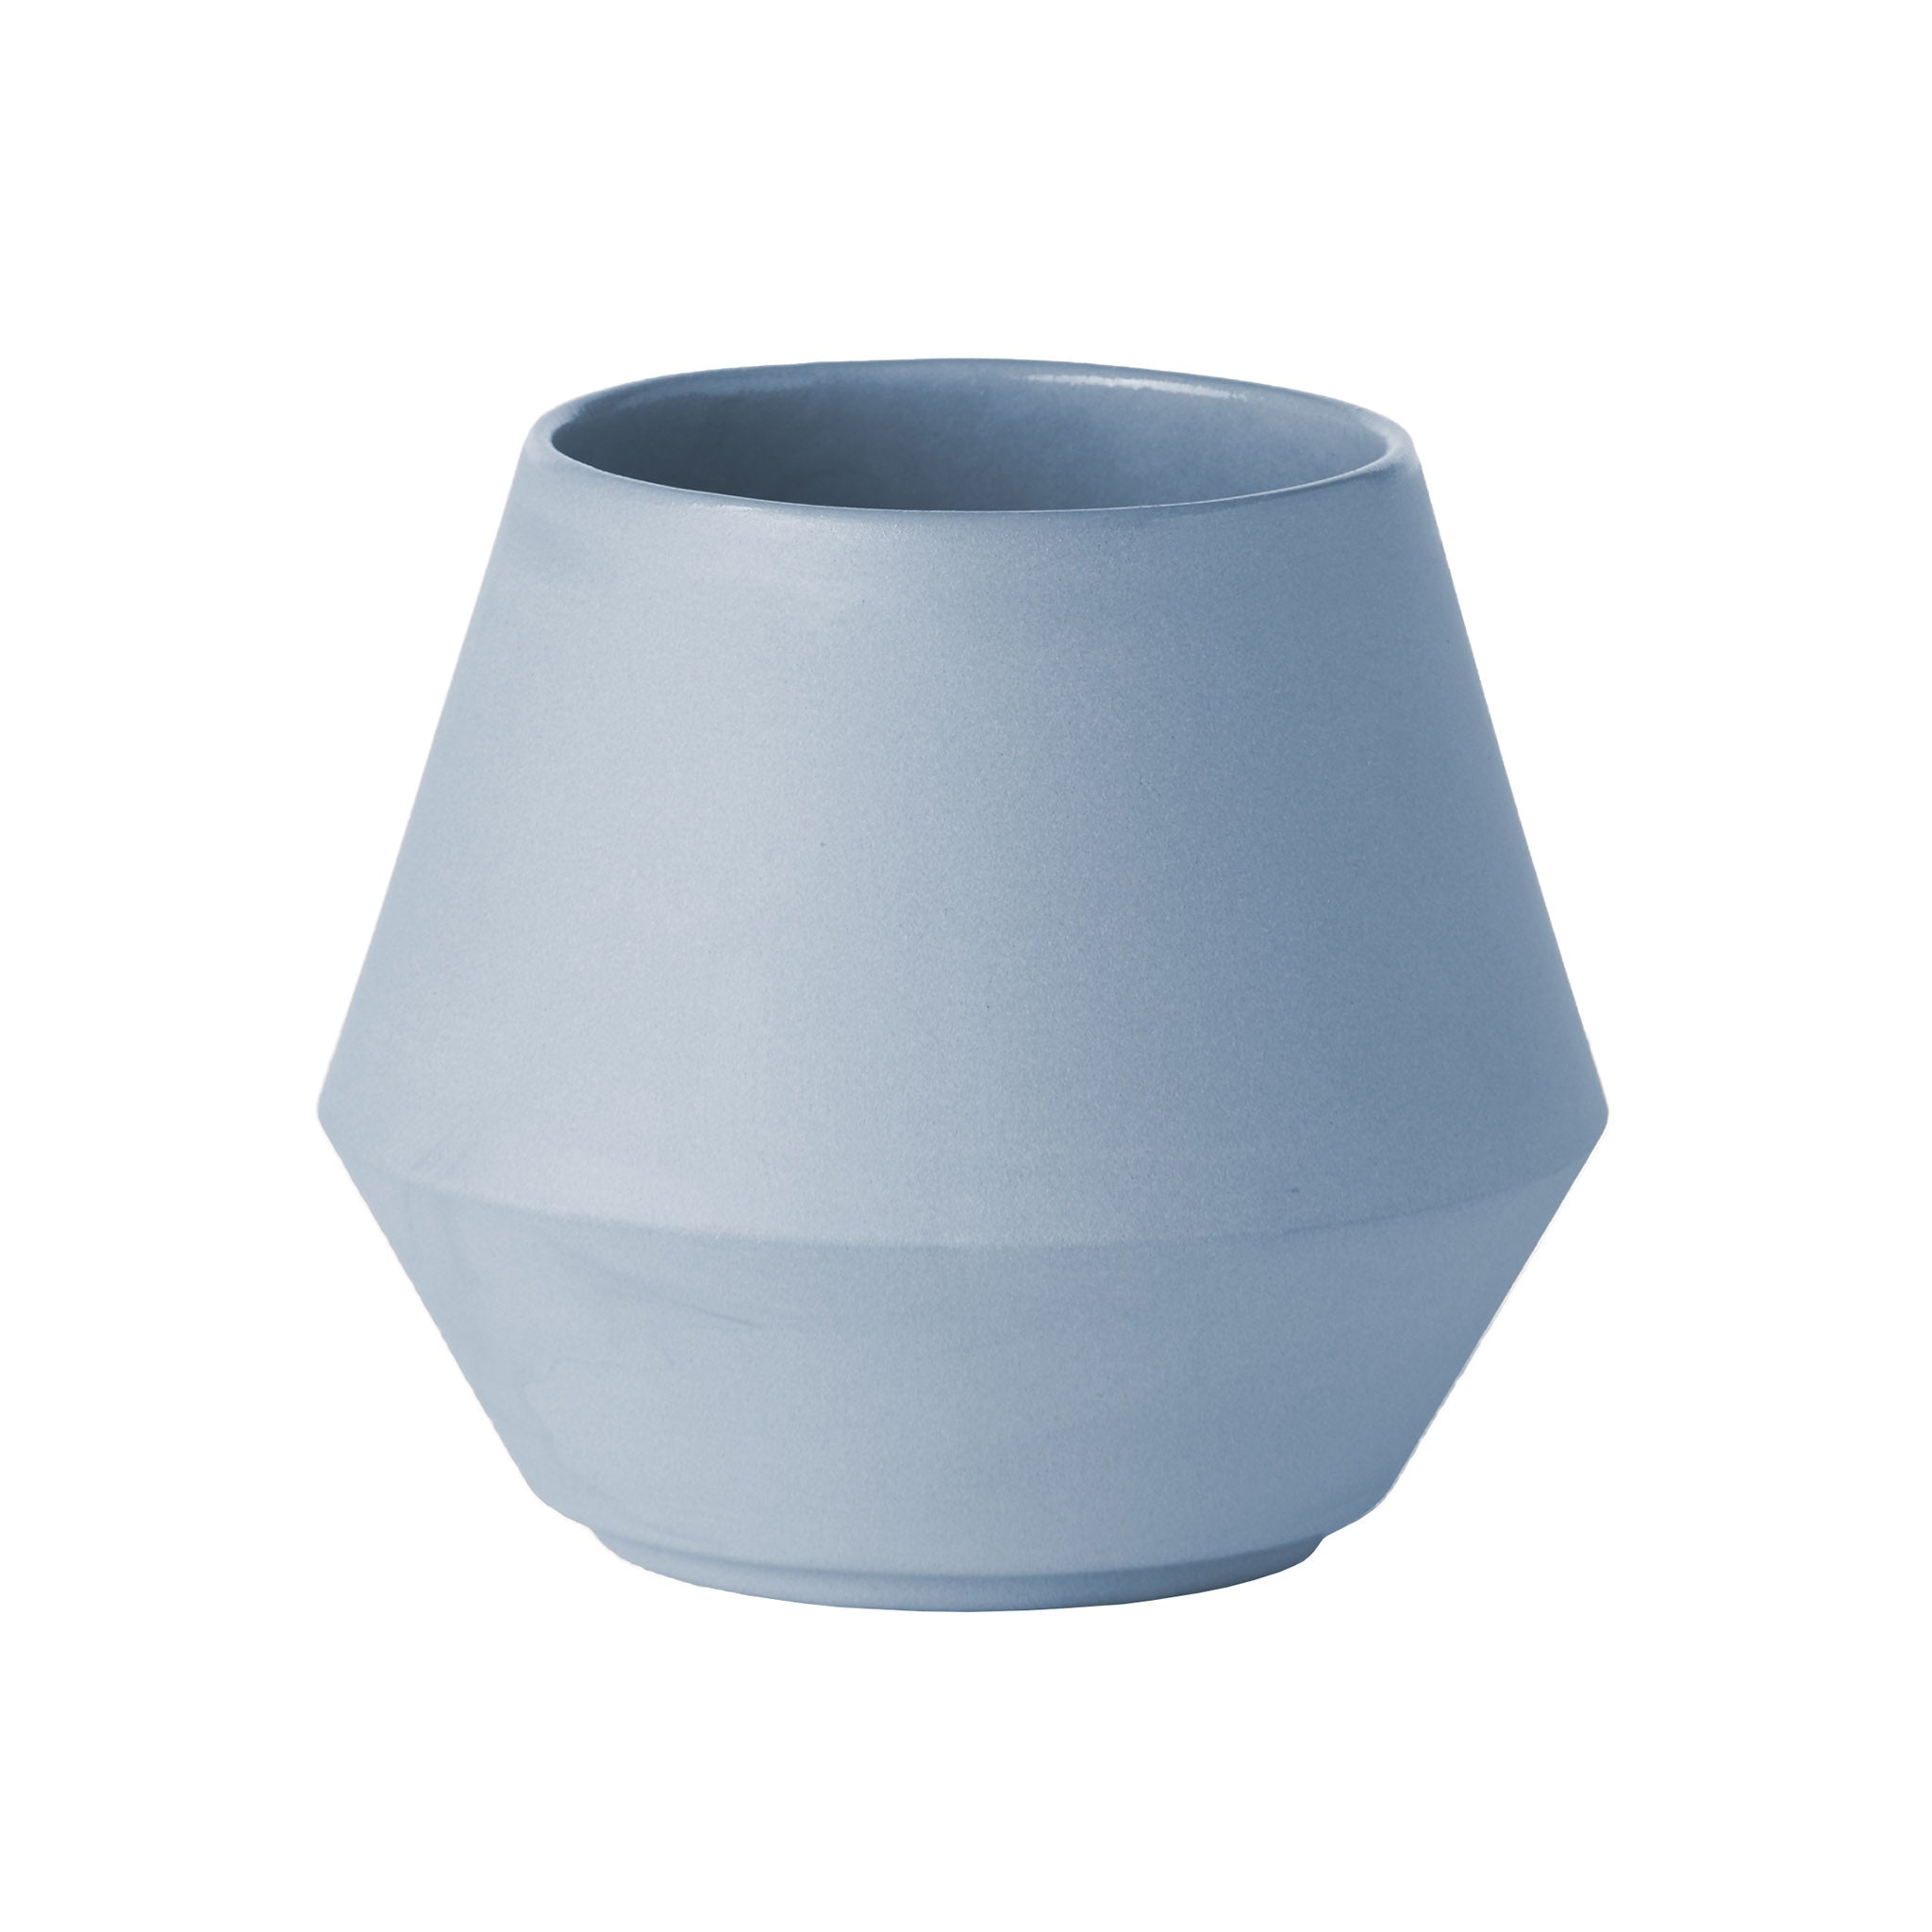 Unison Zuckerdose aus Keramik von Schneid Studio in der Farbe Babyblau